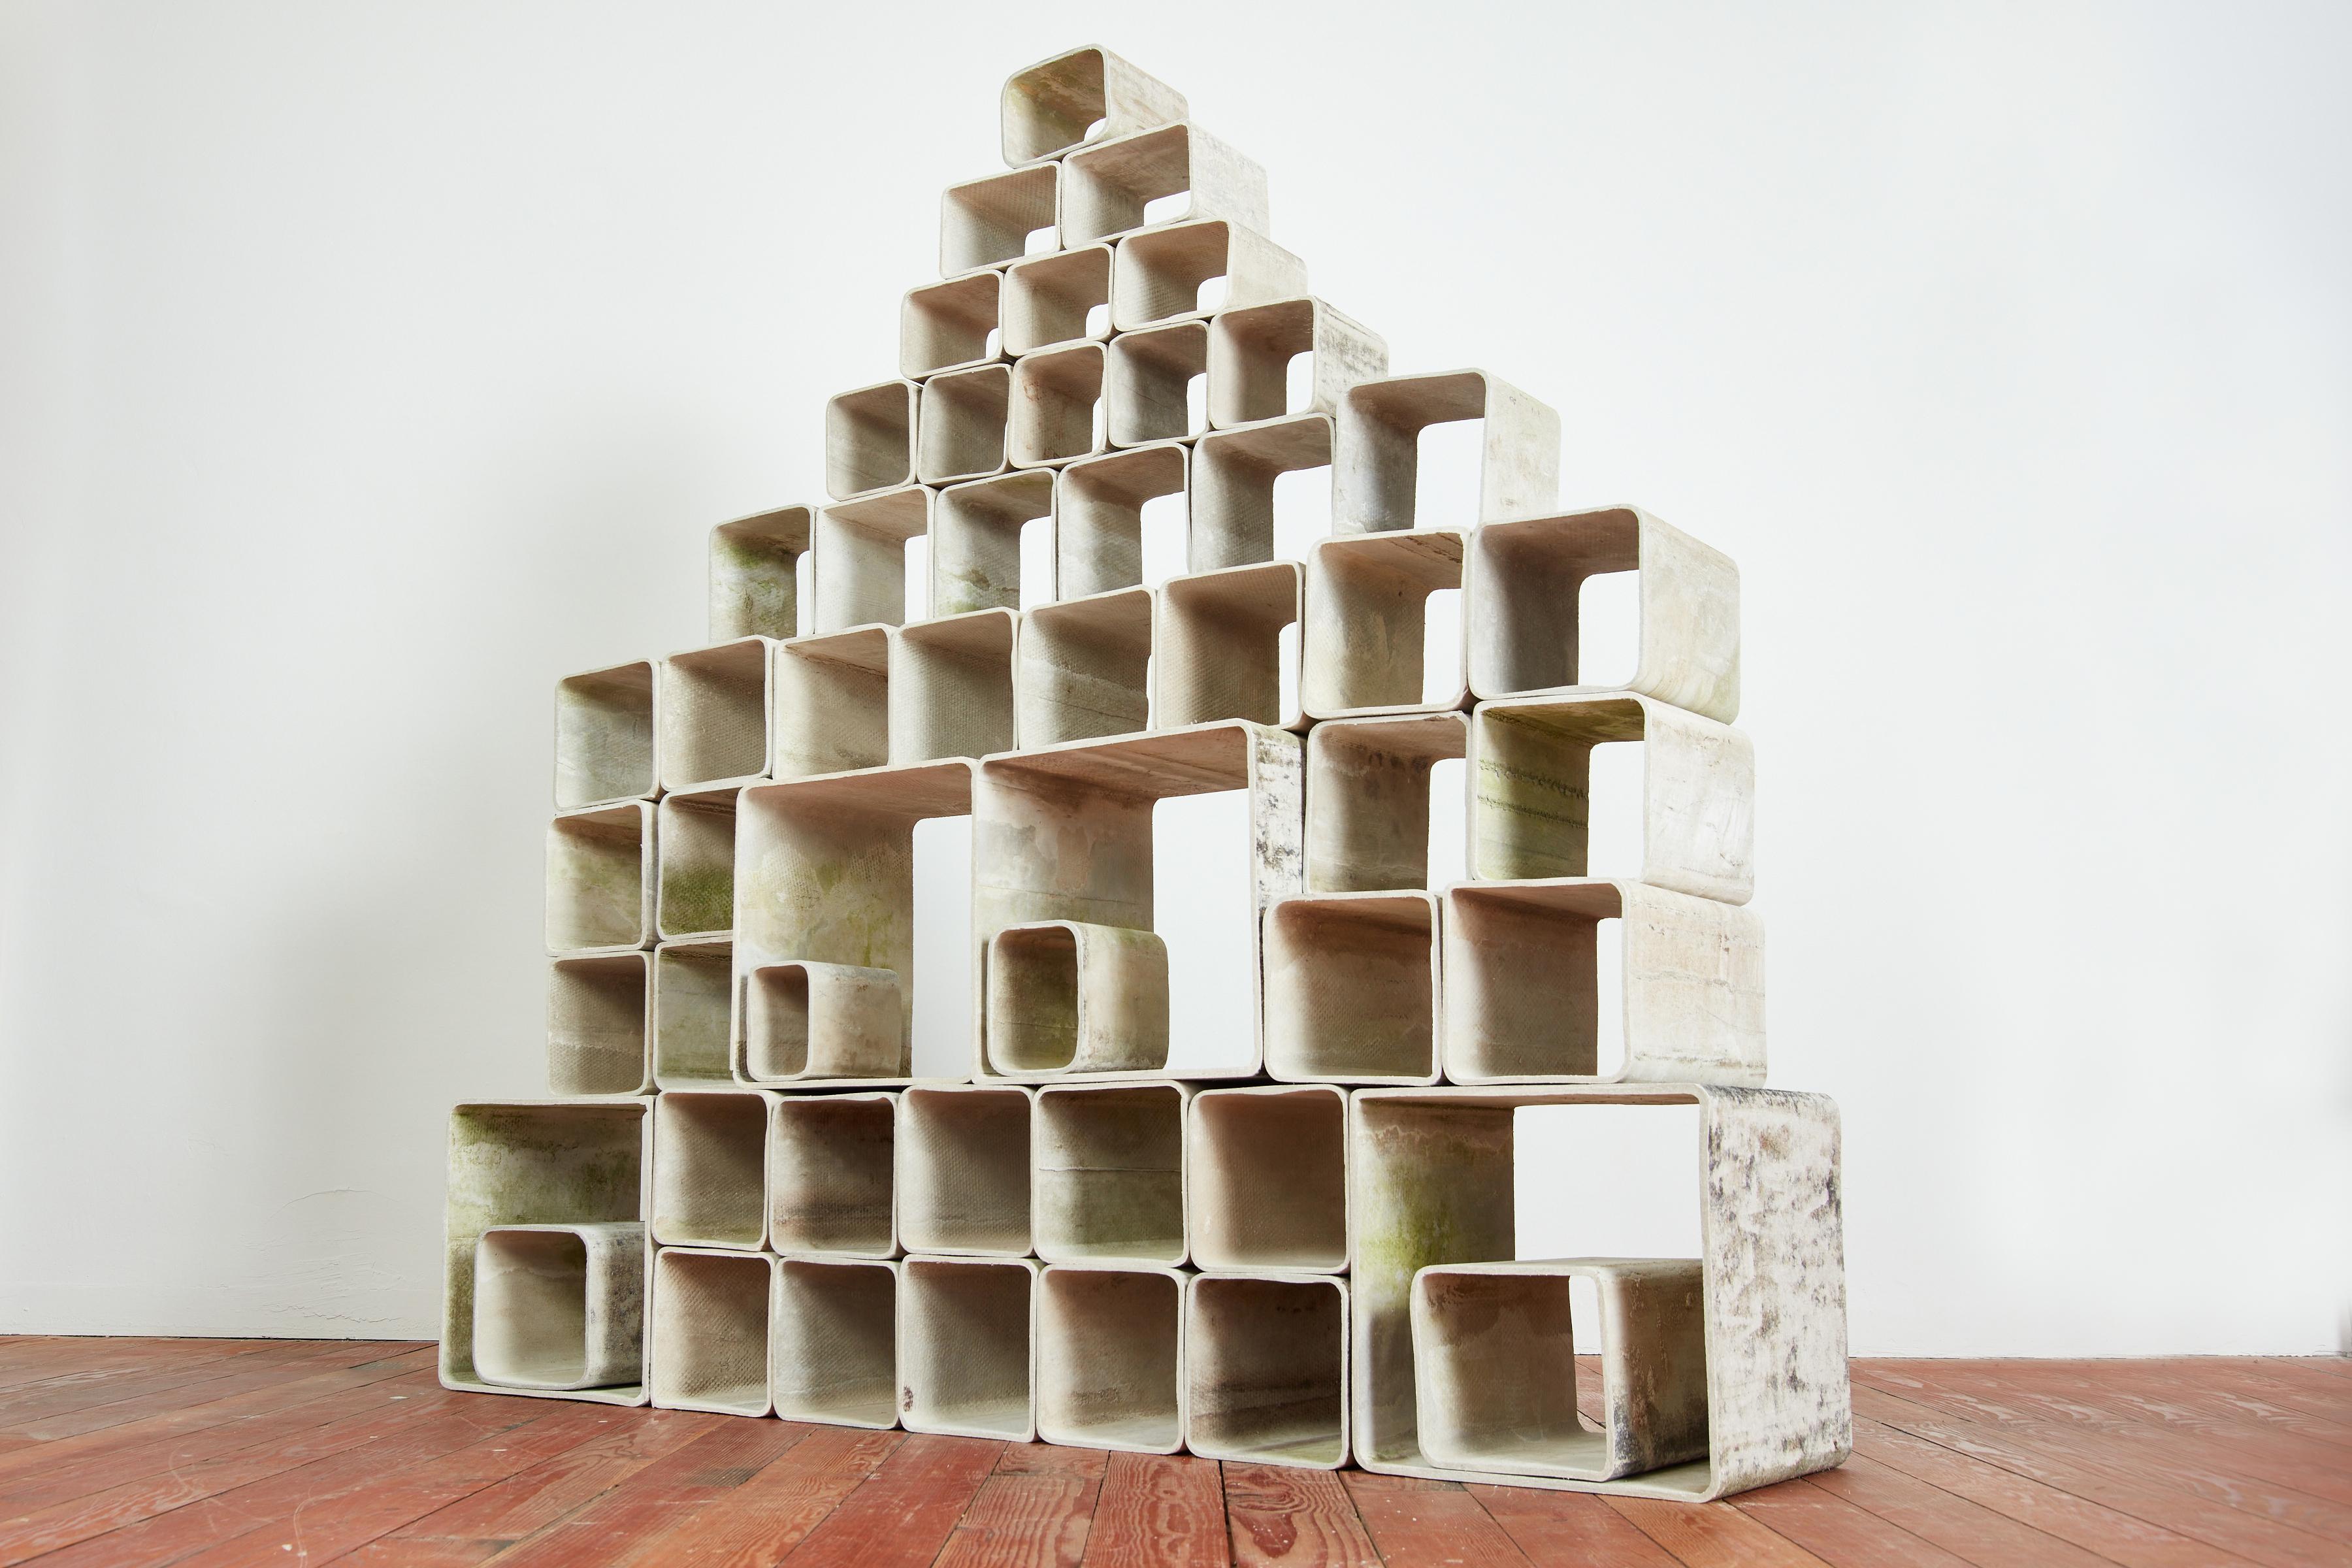 Incroyable bibliothèque modulaire en béton de 52 pièces par Willy Guhl
Composé de cubes en béton de différentes tailles - peut être disposé sous différentes formes en fonction de l'espace et de l'utilisation. 
Idéal comme séparateur de pièce ou